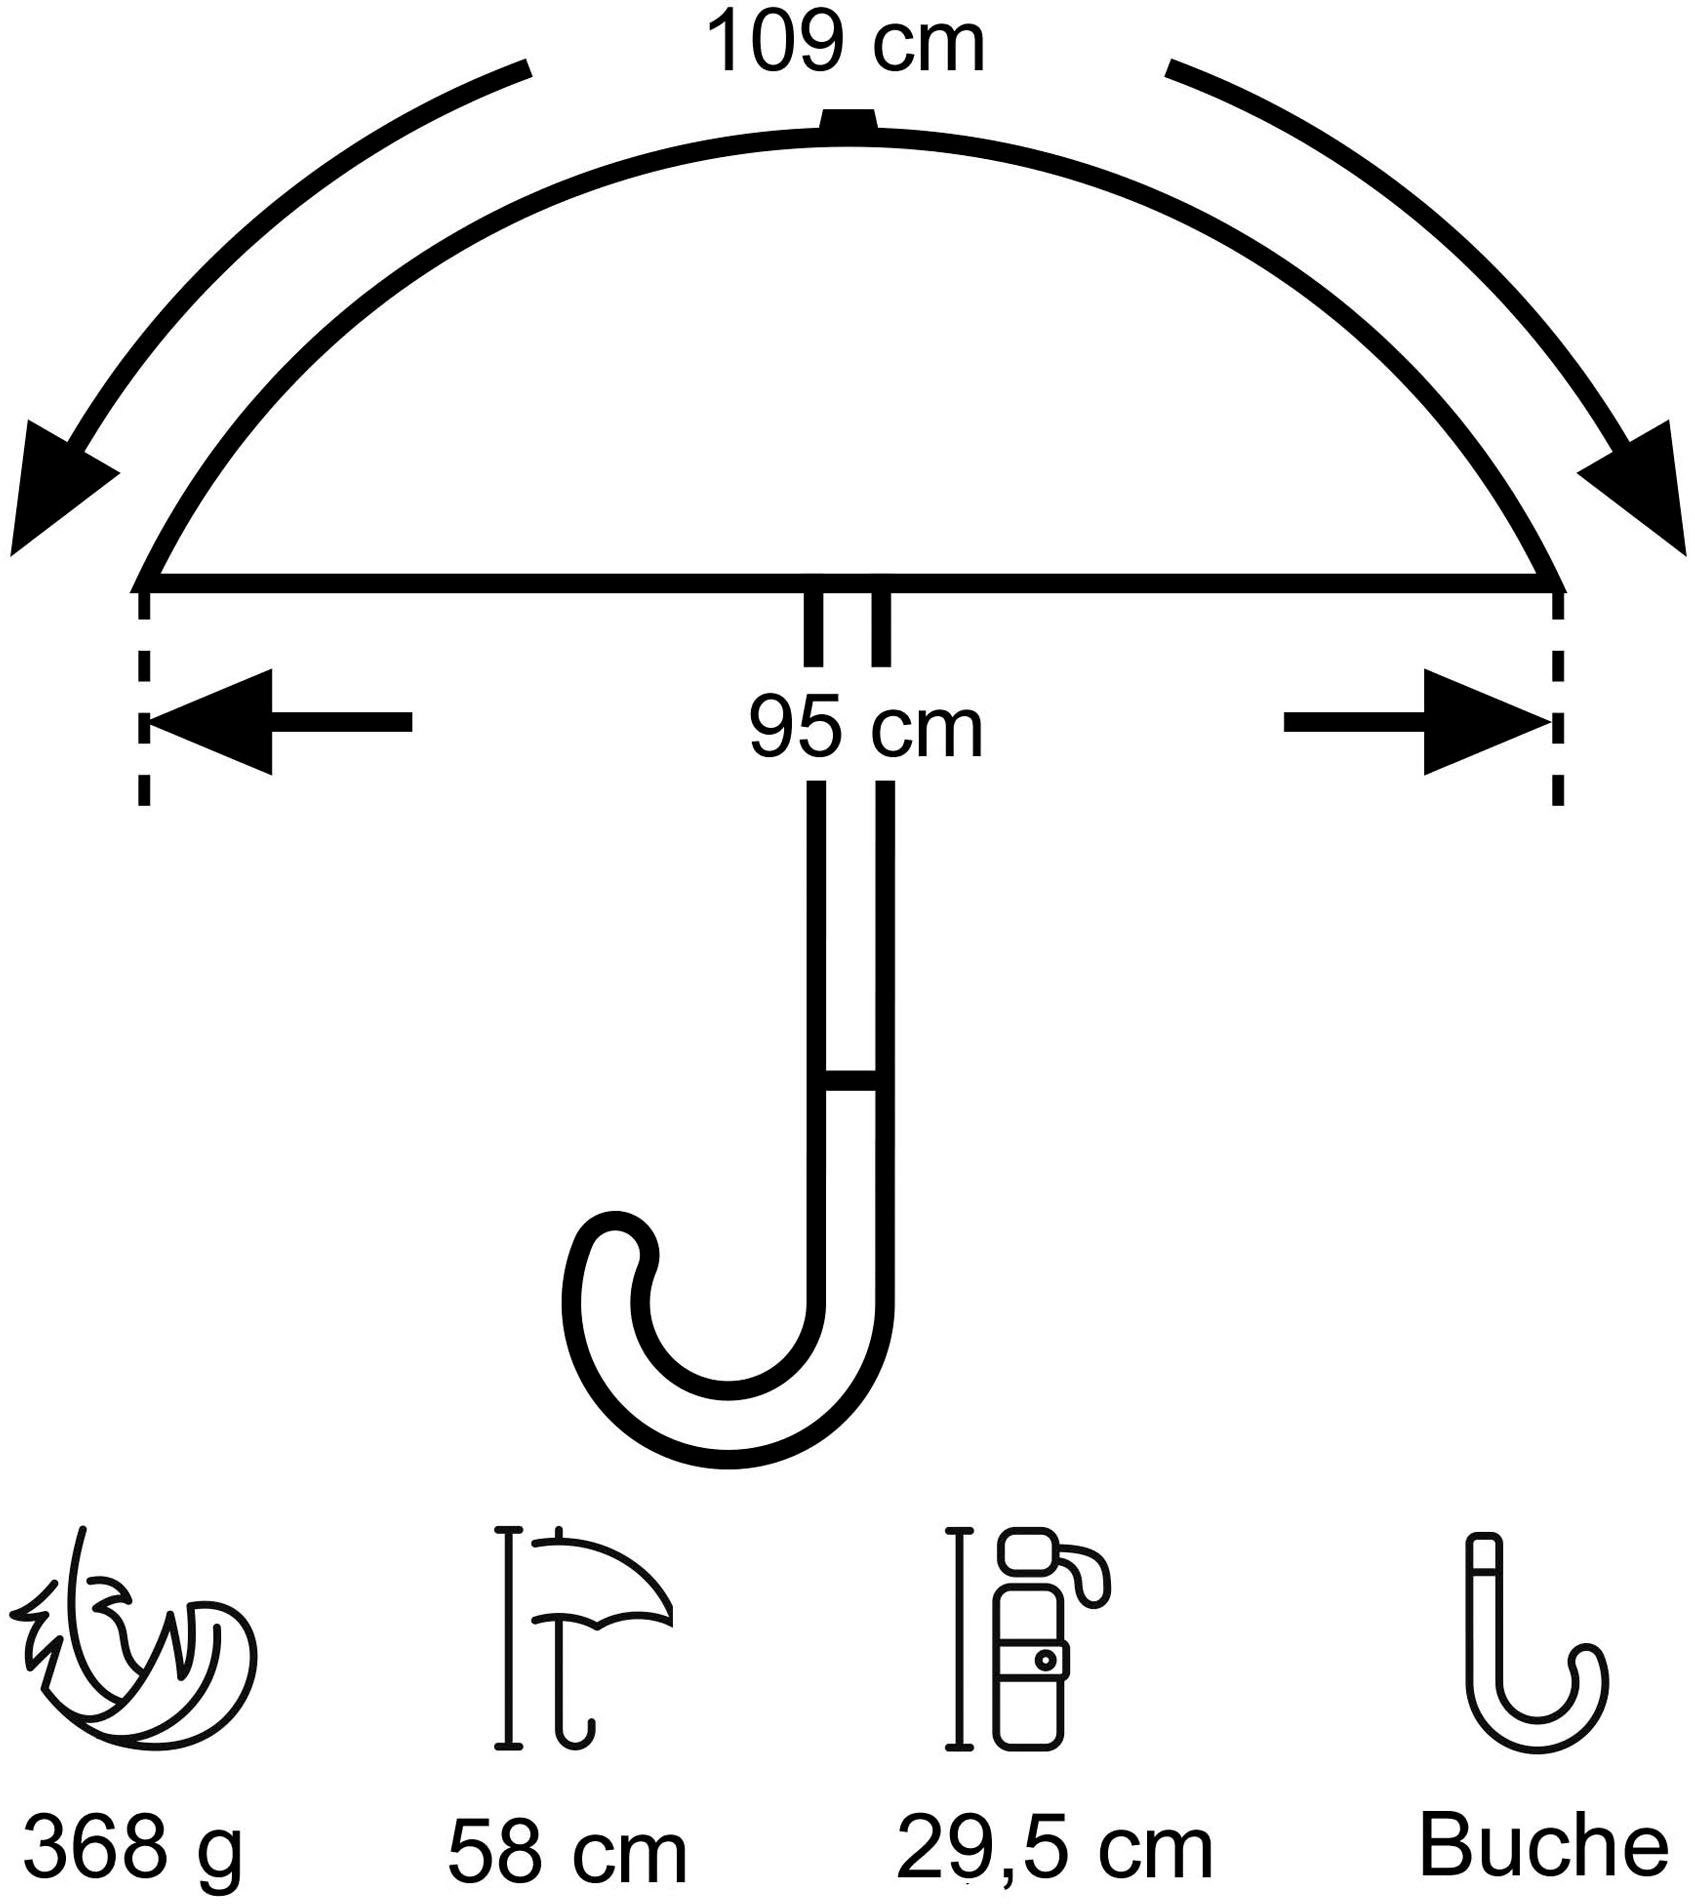 Taschenregenschirm Umwelt-Taschenschirm, pink Punkte marine, EuroSCHIRM®